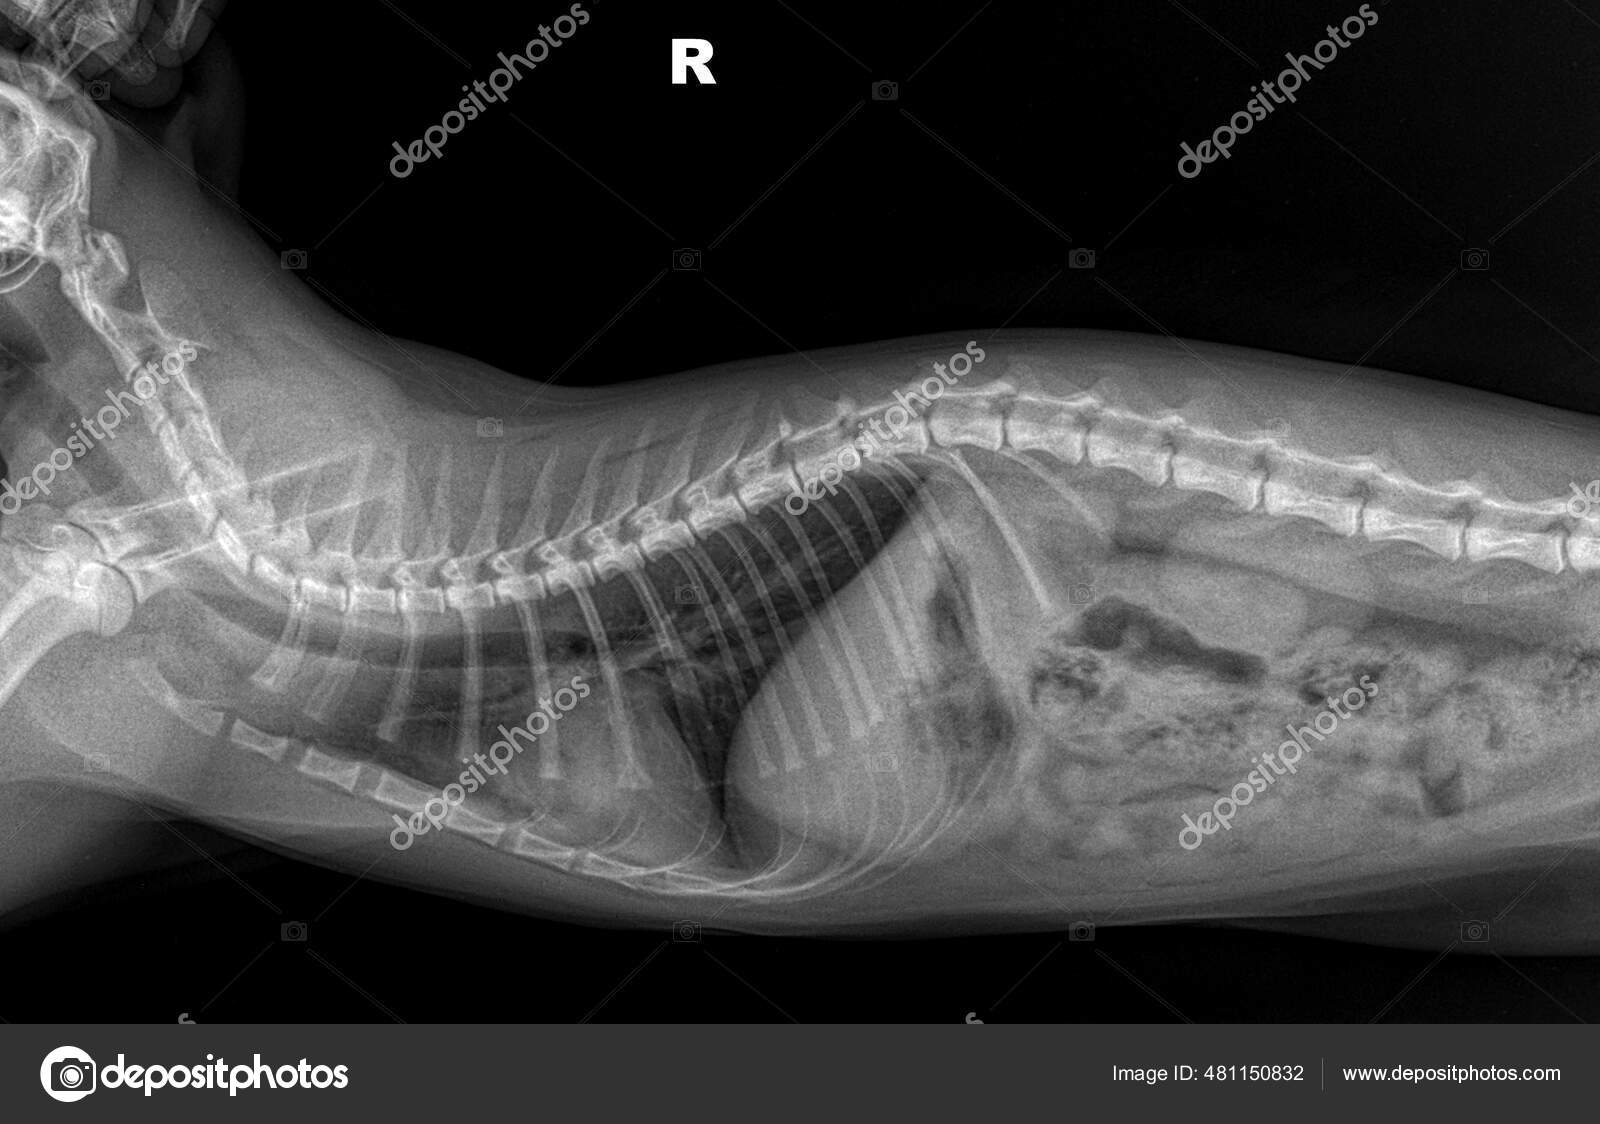 Khám phá những bức hình X-ray hình ảnh rõ nét về chứng bệnh của mèo. Từ các hình ảnh tomography này, bạn sẽ có được cái nhìn chân thực và hiểu rõ hơn về các bệnh lý của mèo.